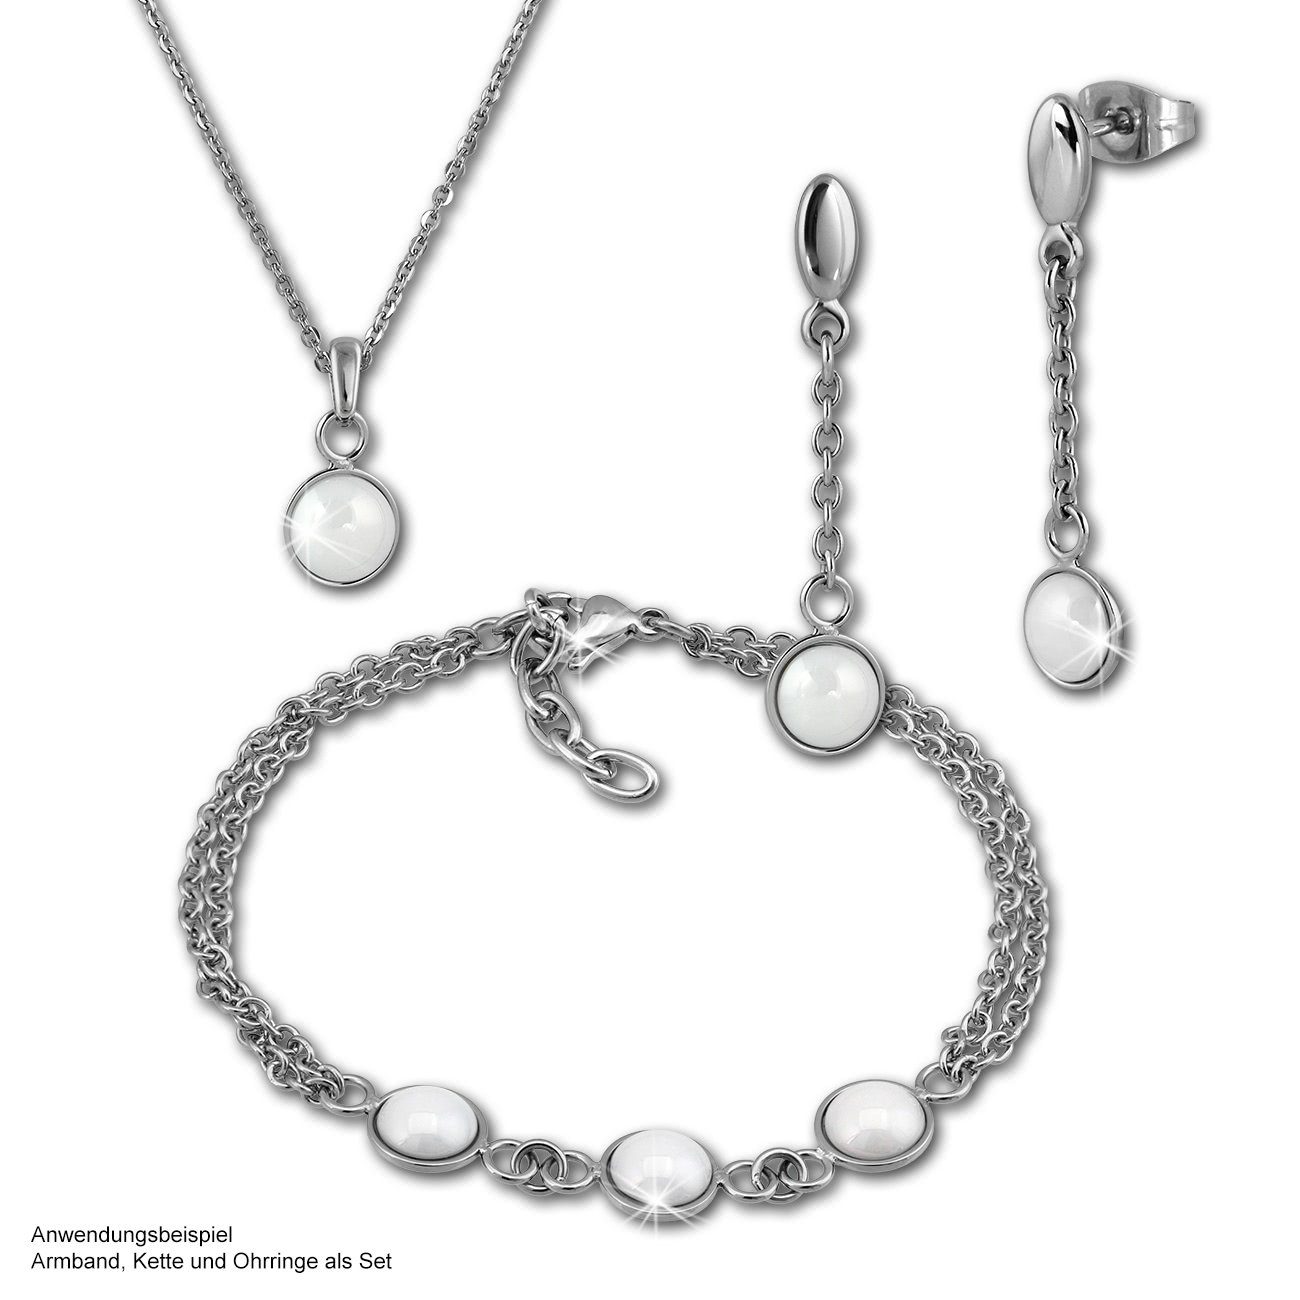 Halsketten Amello aus (Halskette), (Stainless (Halbkugel) Halbkugel Damen Edelstahlkette Steel) silber Halskette Amello weiß Edelstahl